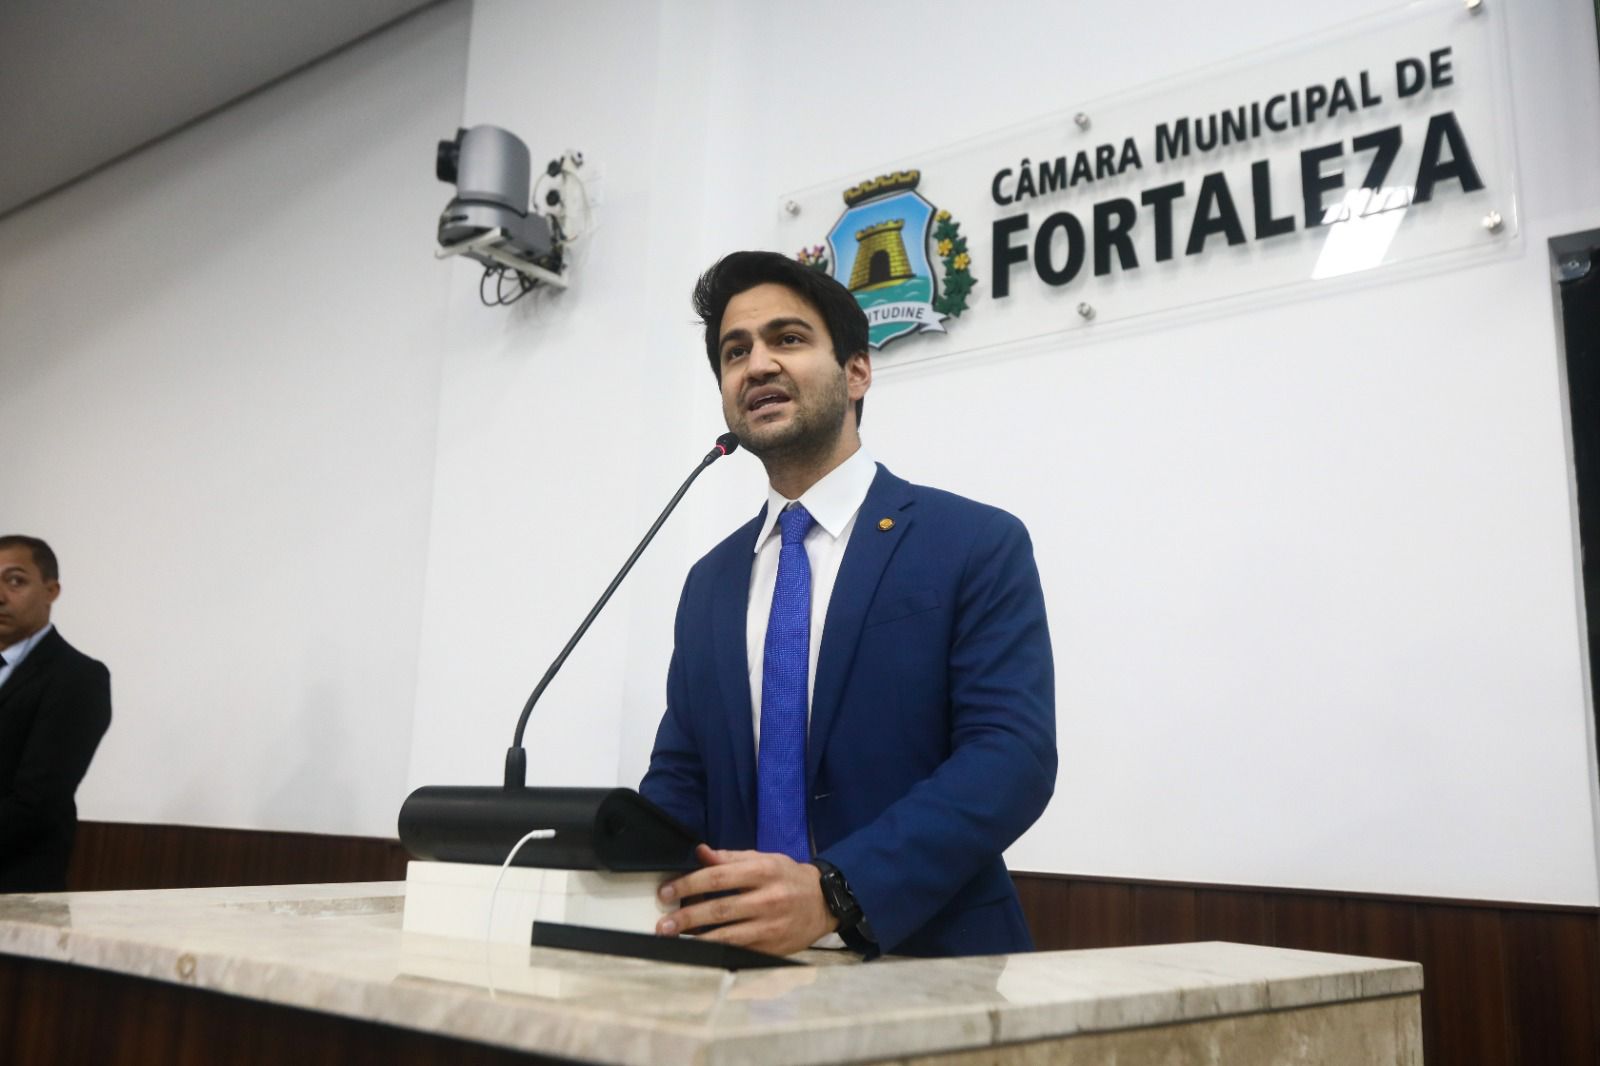 Protocolada por Pedro Matos, moção de repúdio aos ataques contra Israel é aprovada na Câmara Municipal de Fortaleza